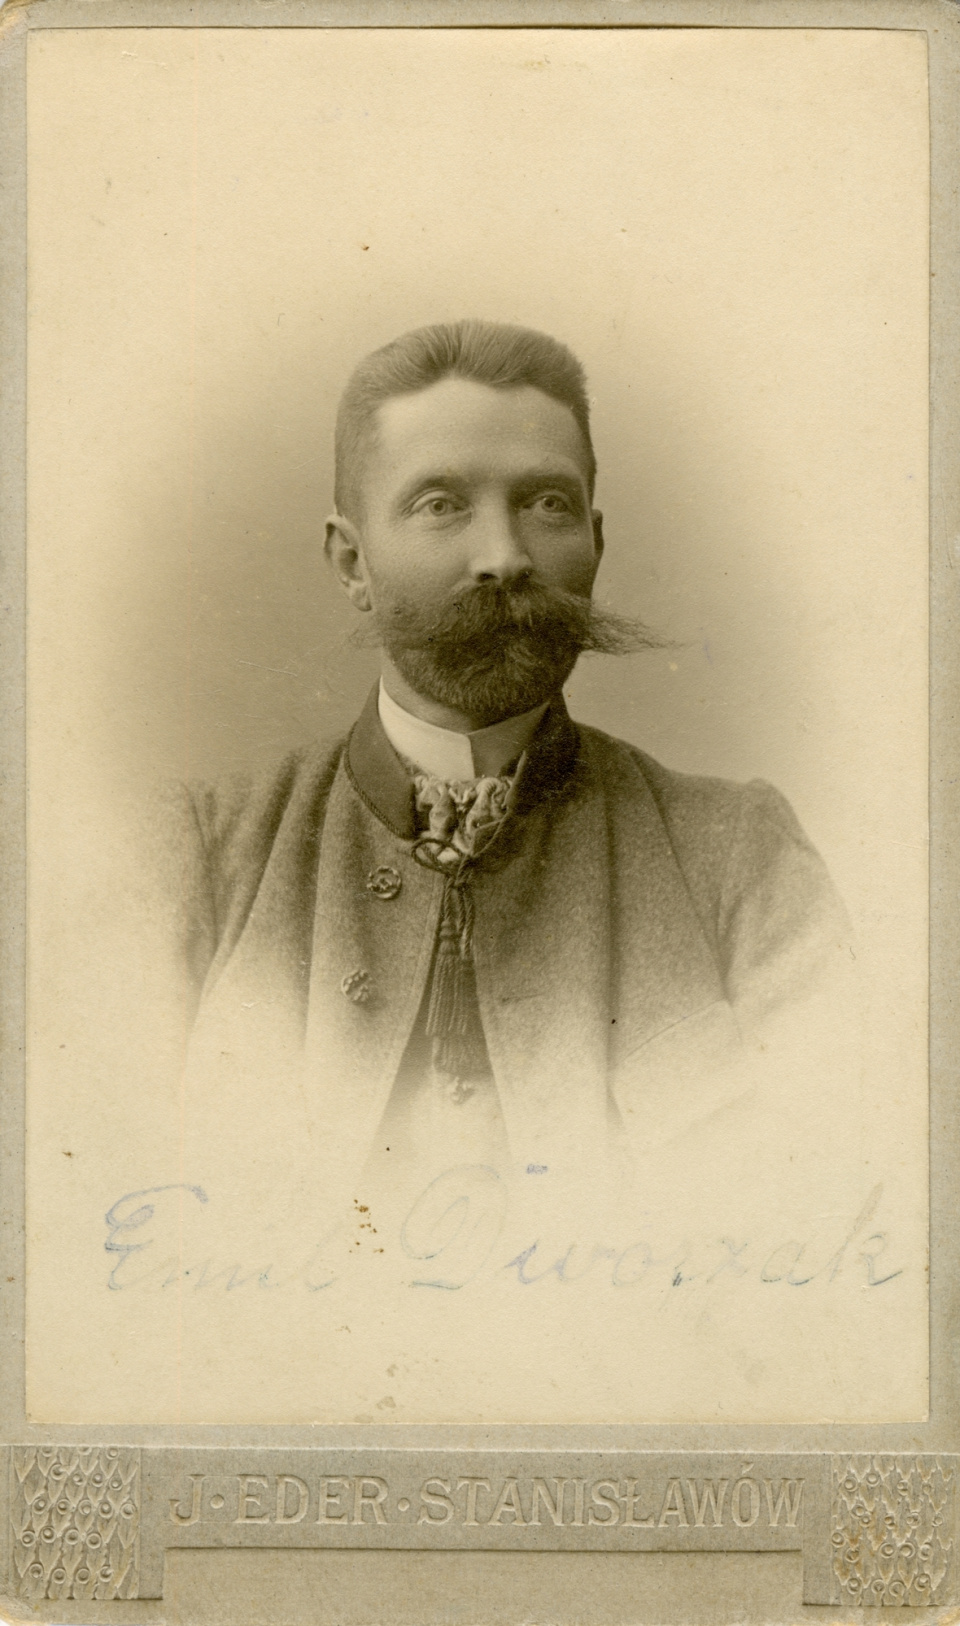 Emil Dworzak, dziadek Jerzego Hubickiego [fot. J.Eder, Stanisławów, około 1900 r. Archiwum J. Hubickiego]